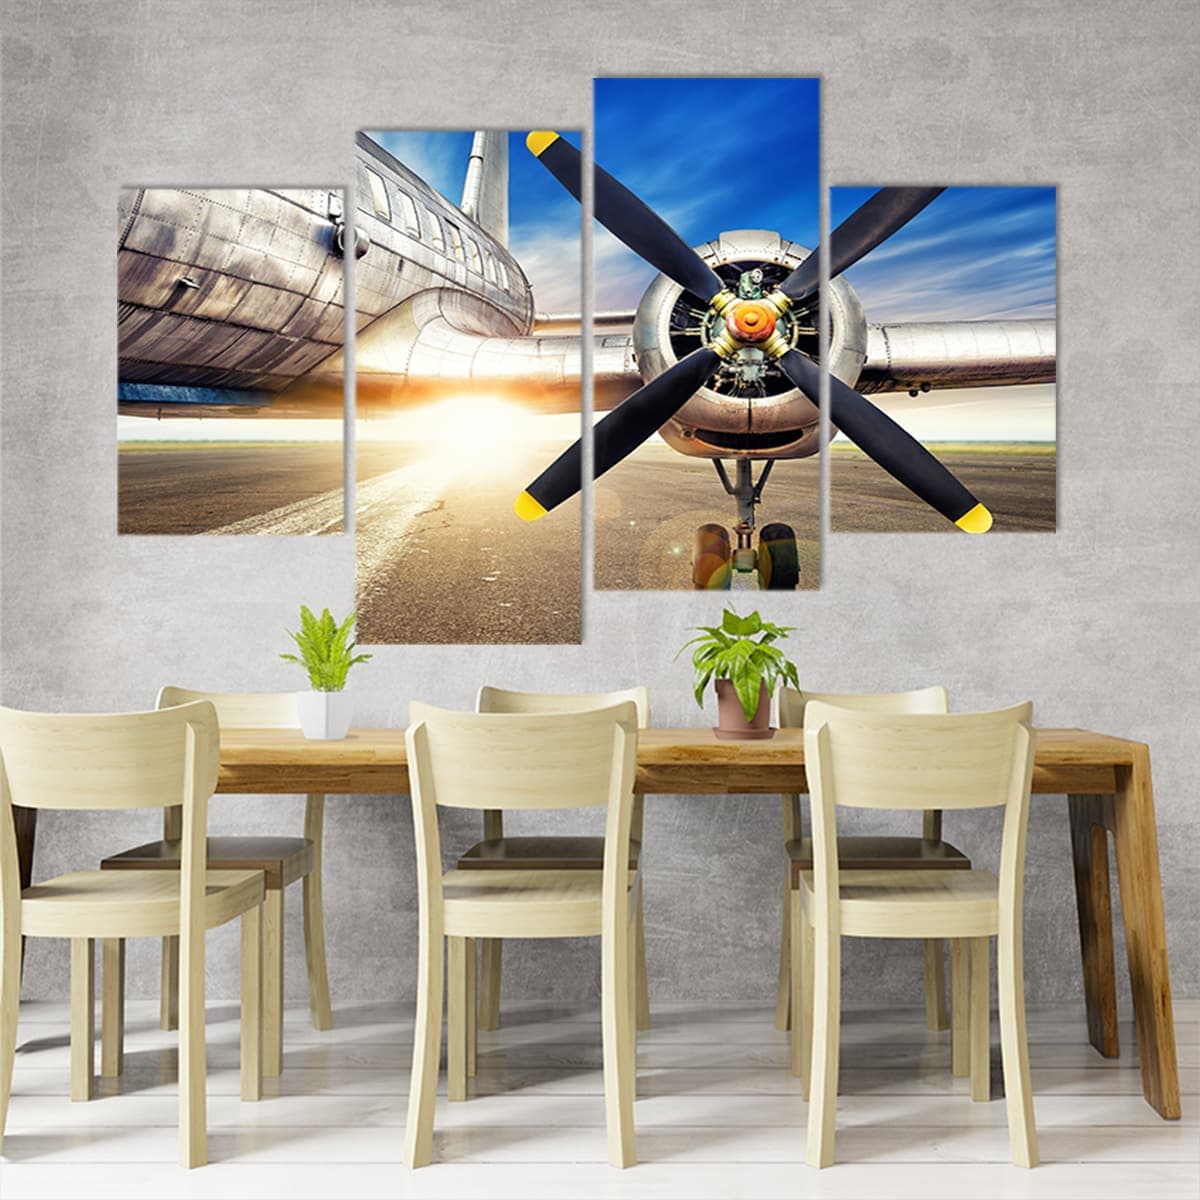 Aircraft propeller Canvas Wall Art Set